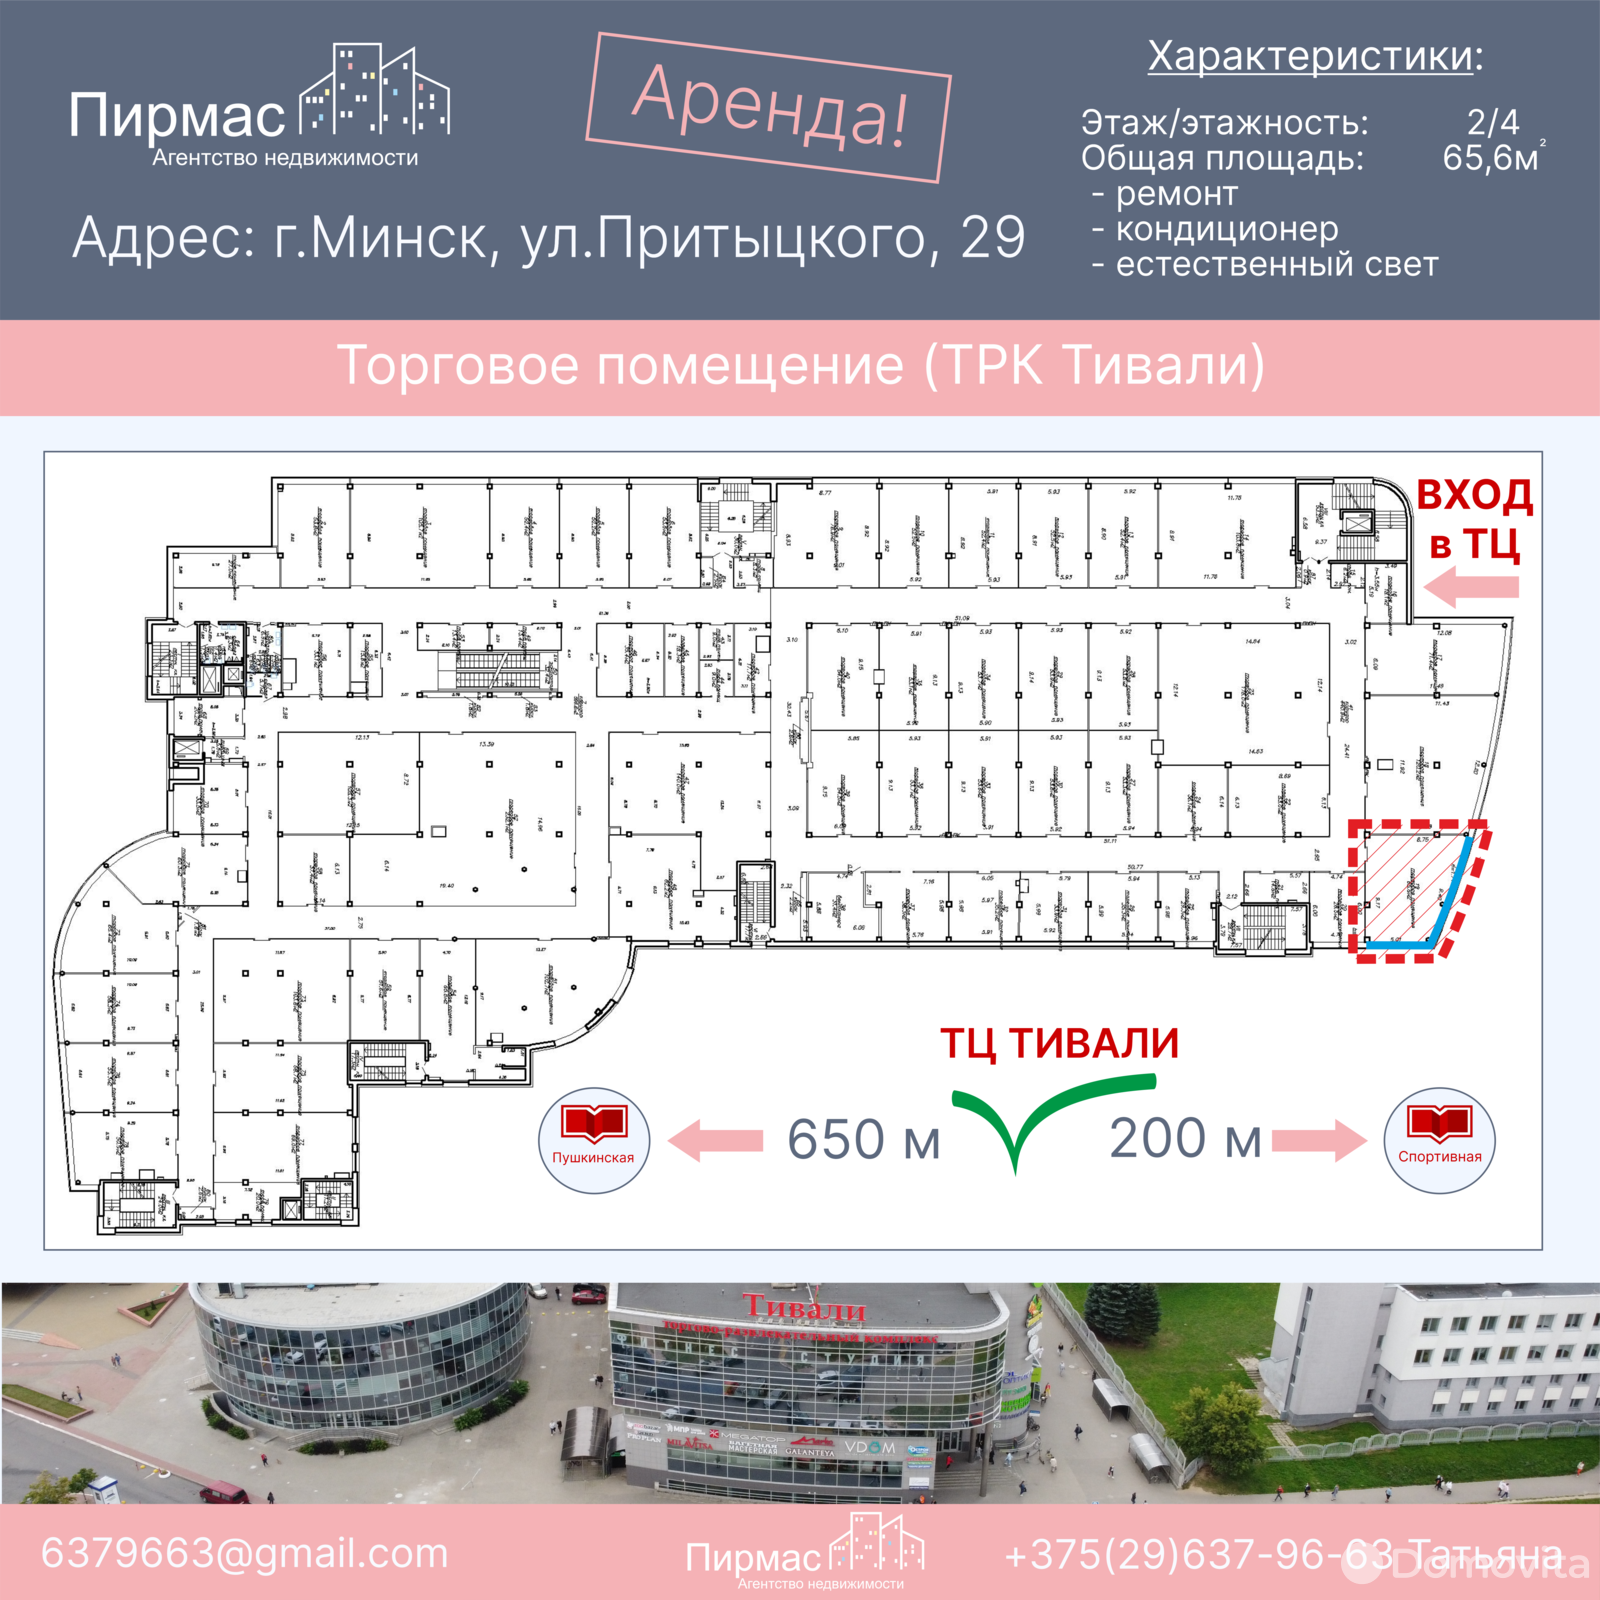 Аренда торговой точки на ул. Притыцкого, д. 29 в Минске, 656EUR, код 964916 - фото 1